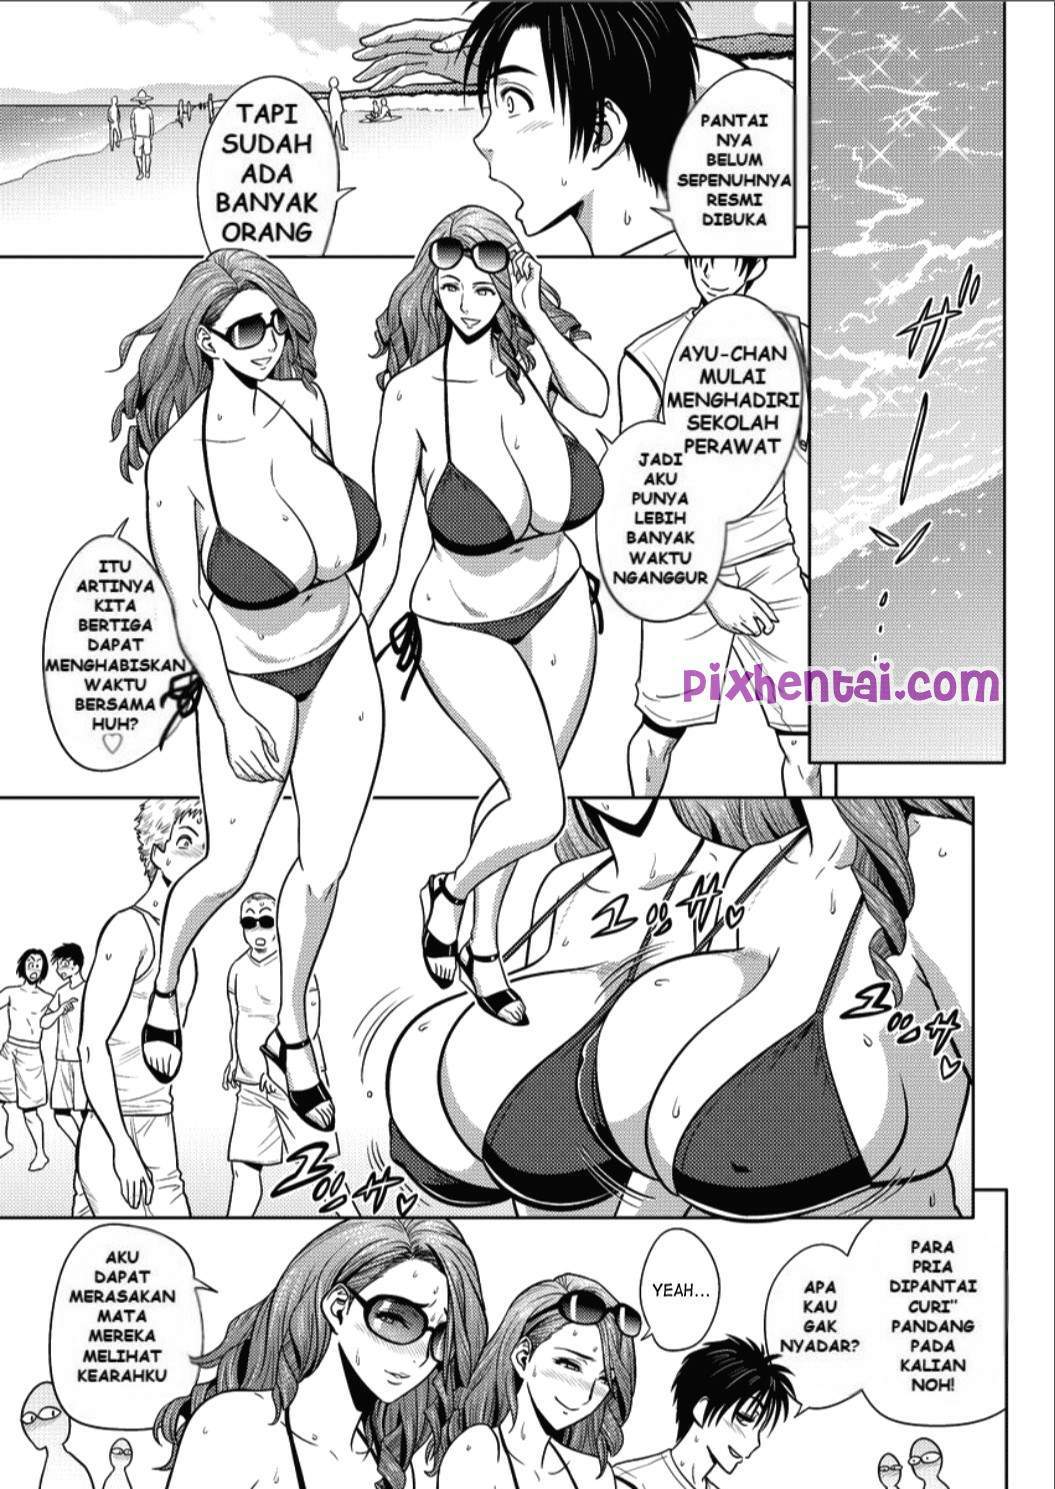 Komik hentai xxx manga sex bokep sesuatu yang dapat memuaskan tubuh dan pikiran 05